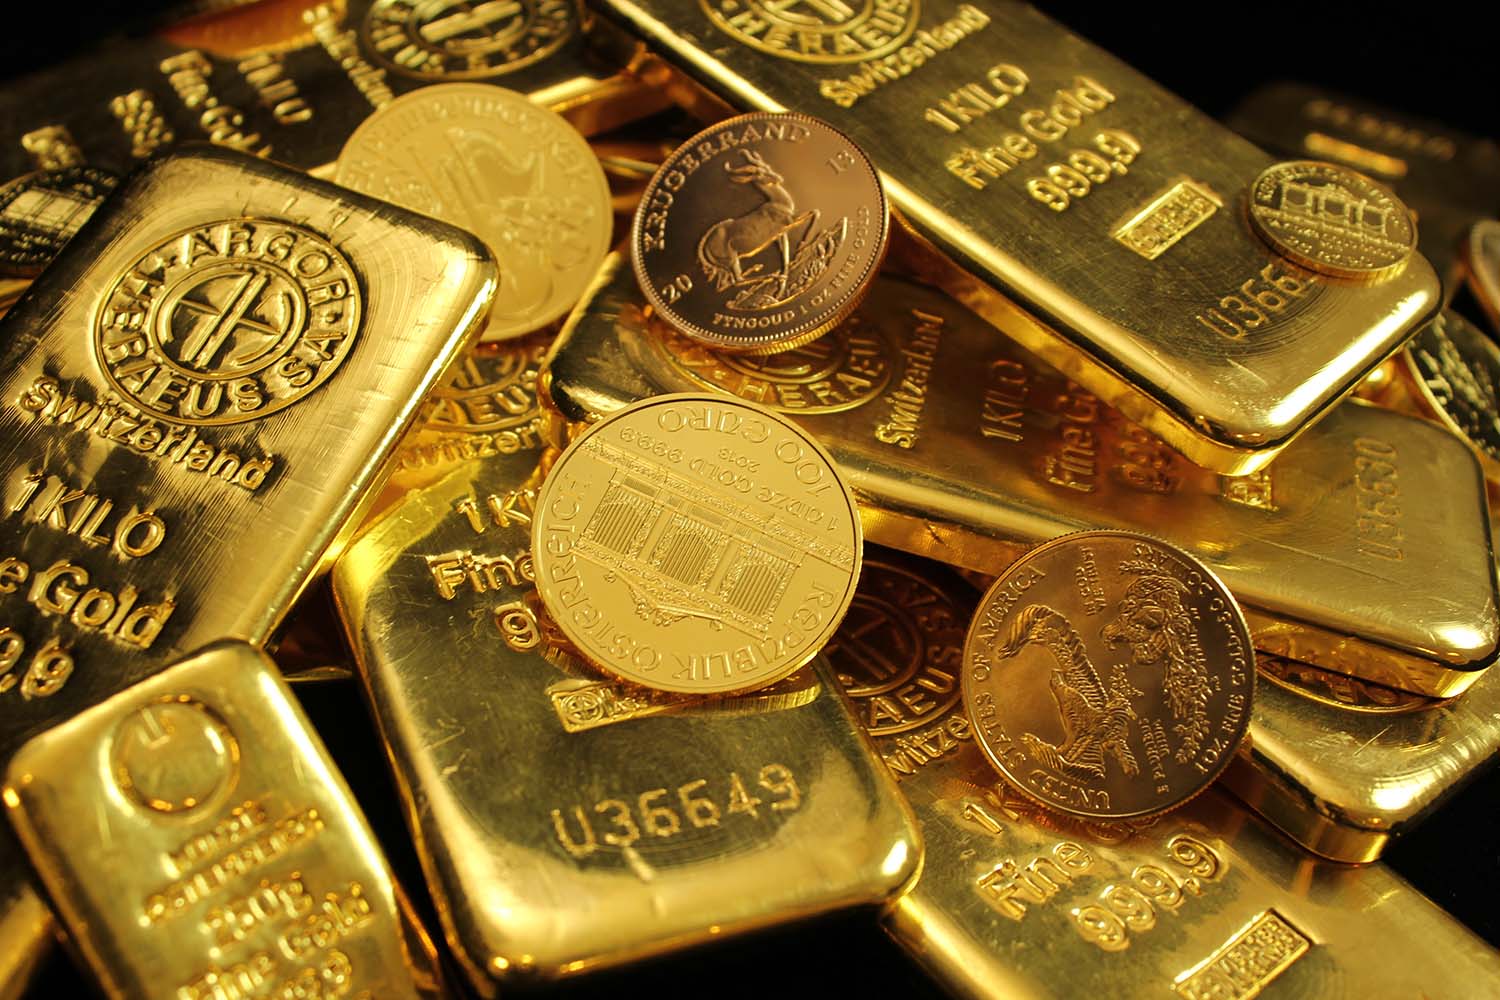 Gold IRA Investing